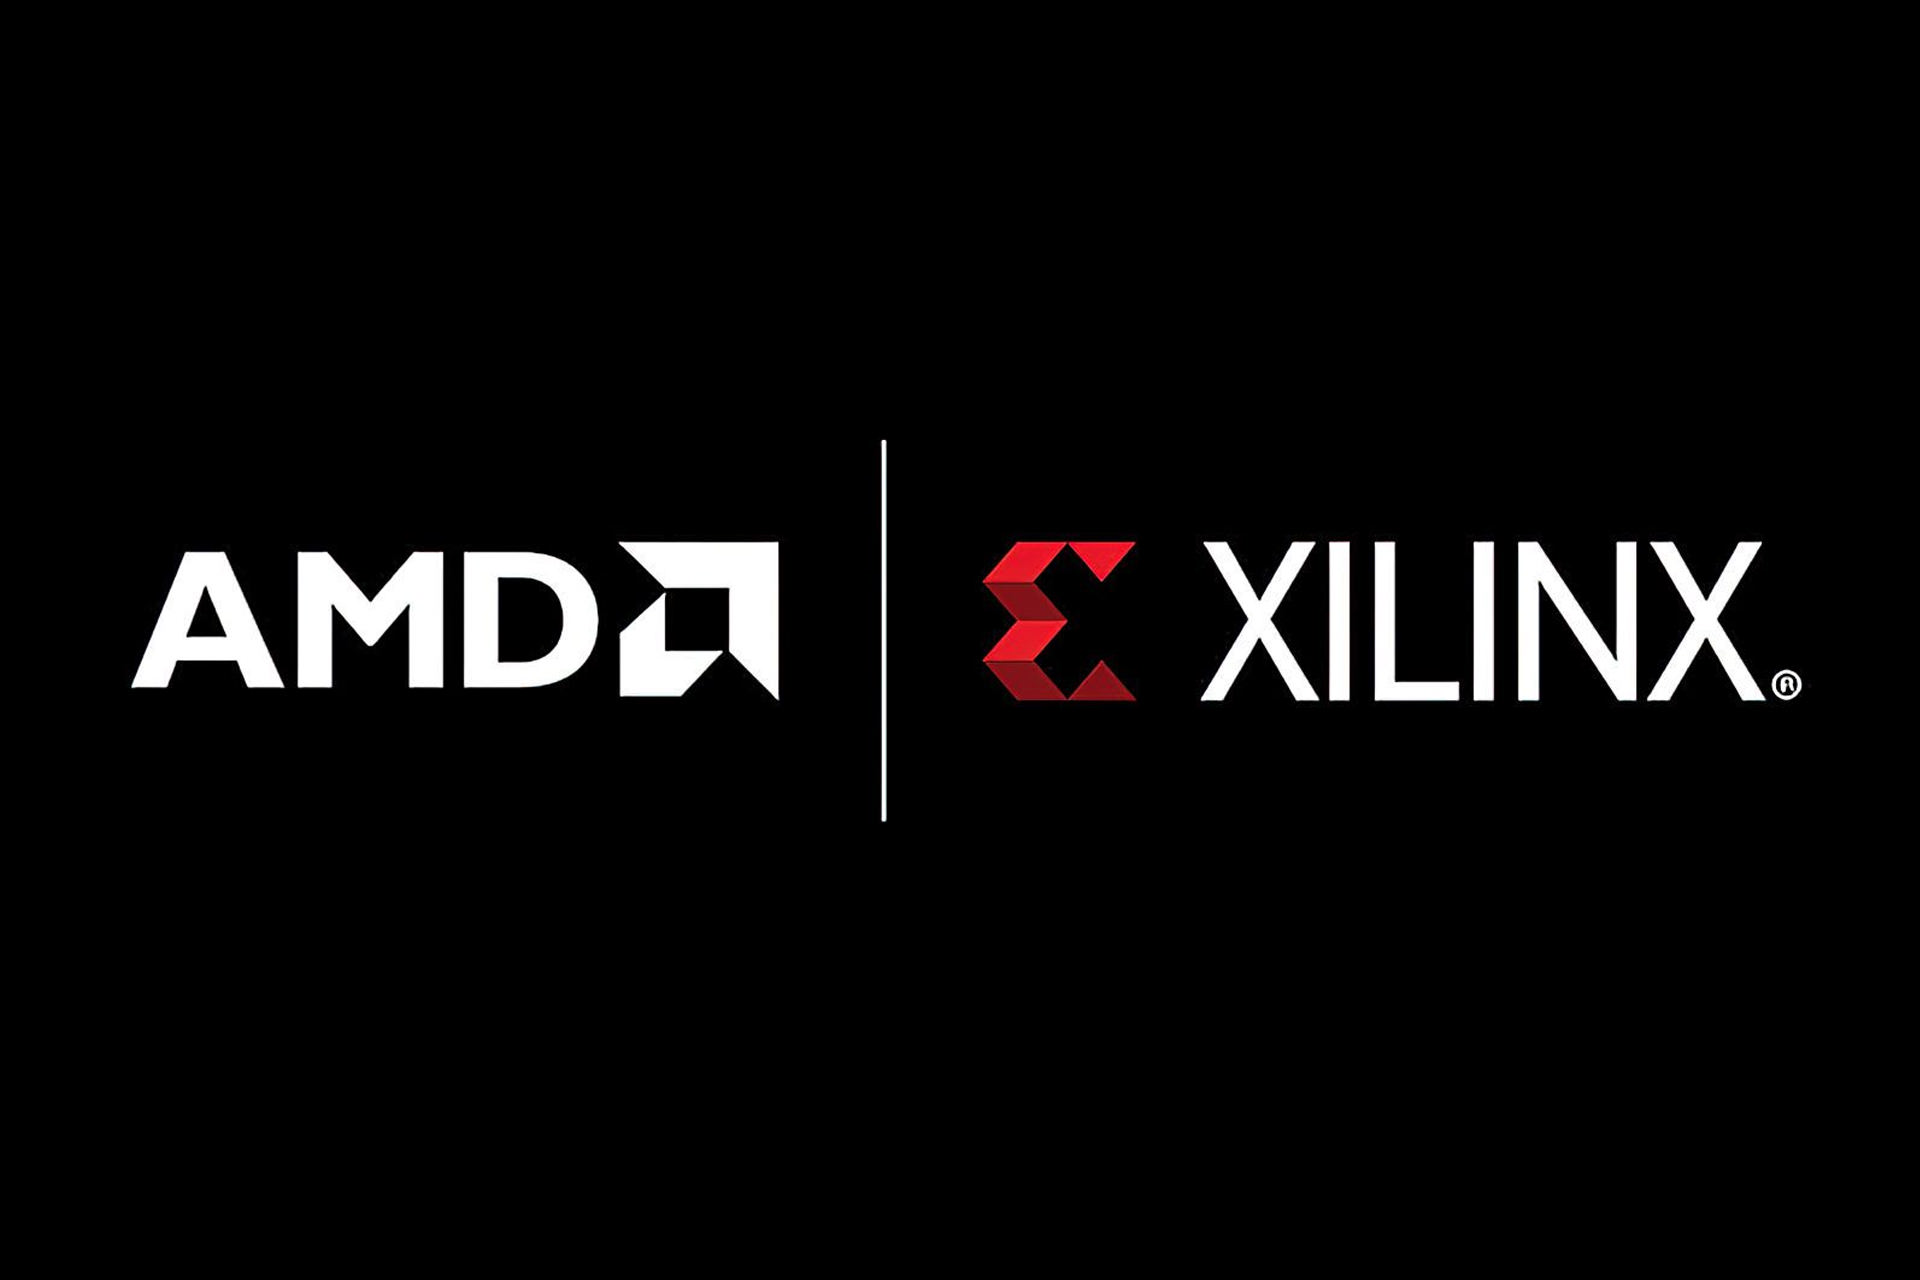 AMD تمام مجوزهای لازم را برای تصاحب زایلینکس دریافت کرد